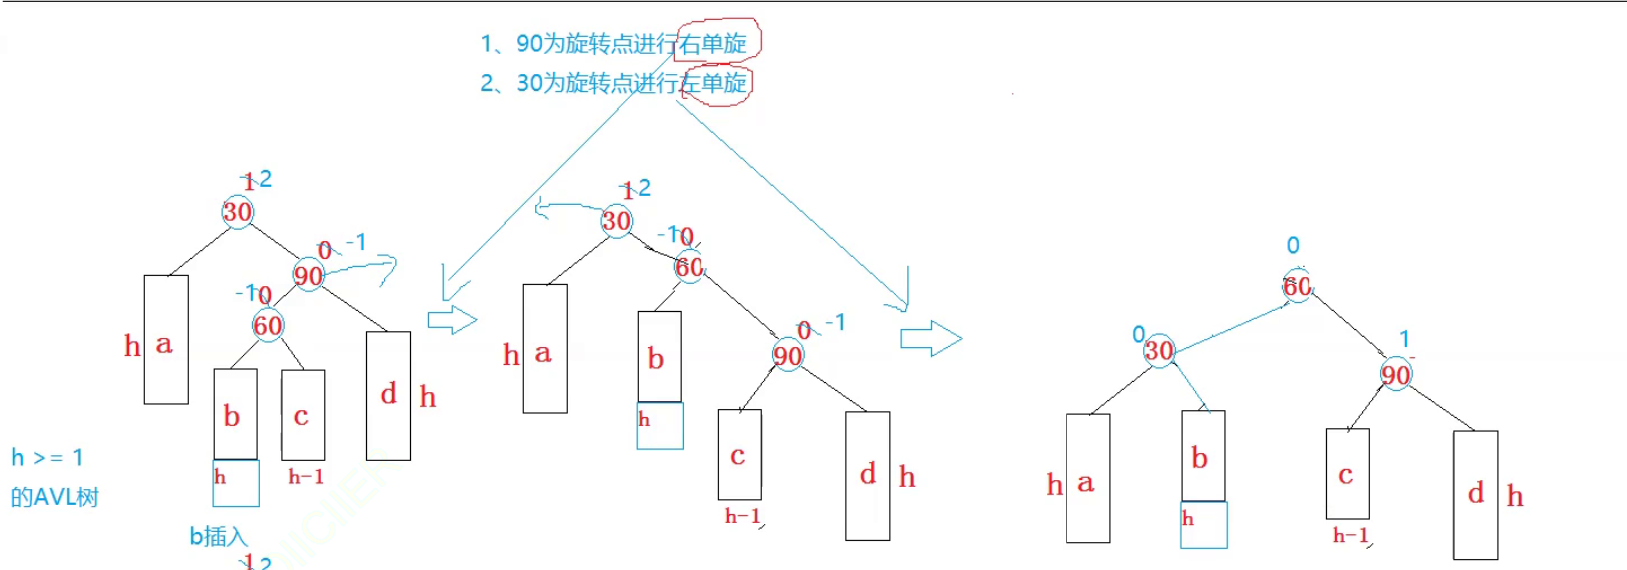 AVL树节点插入方式解析（单旋转和双旋转）_二叉搜索树_33